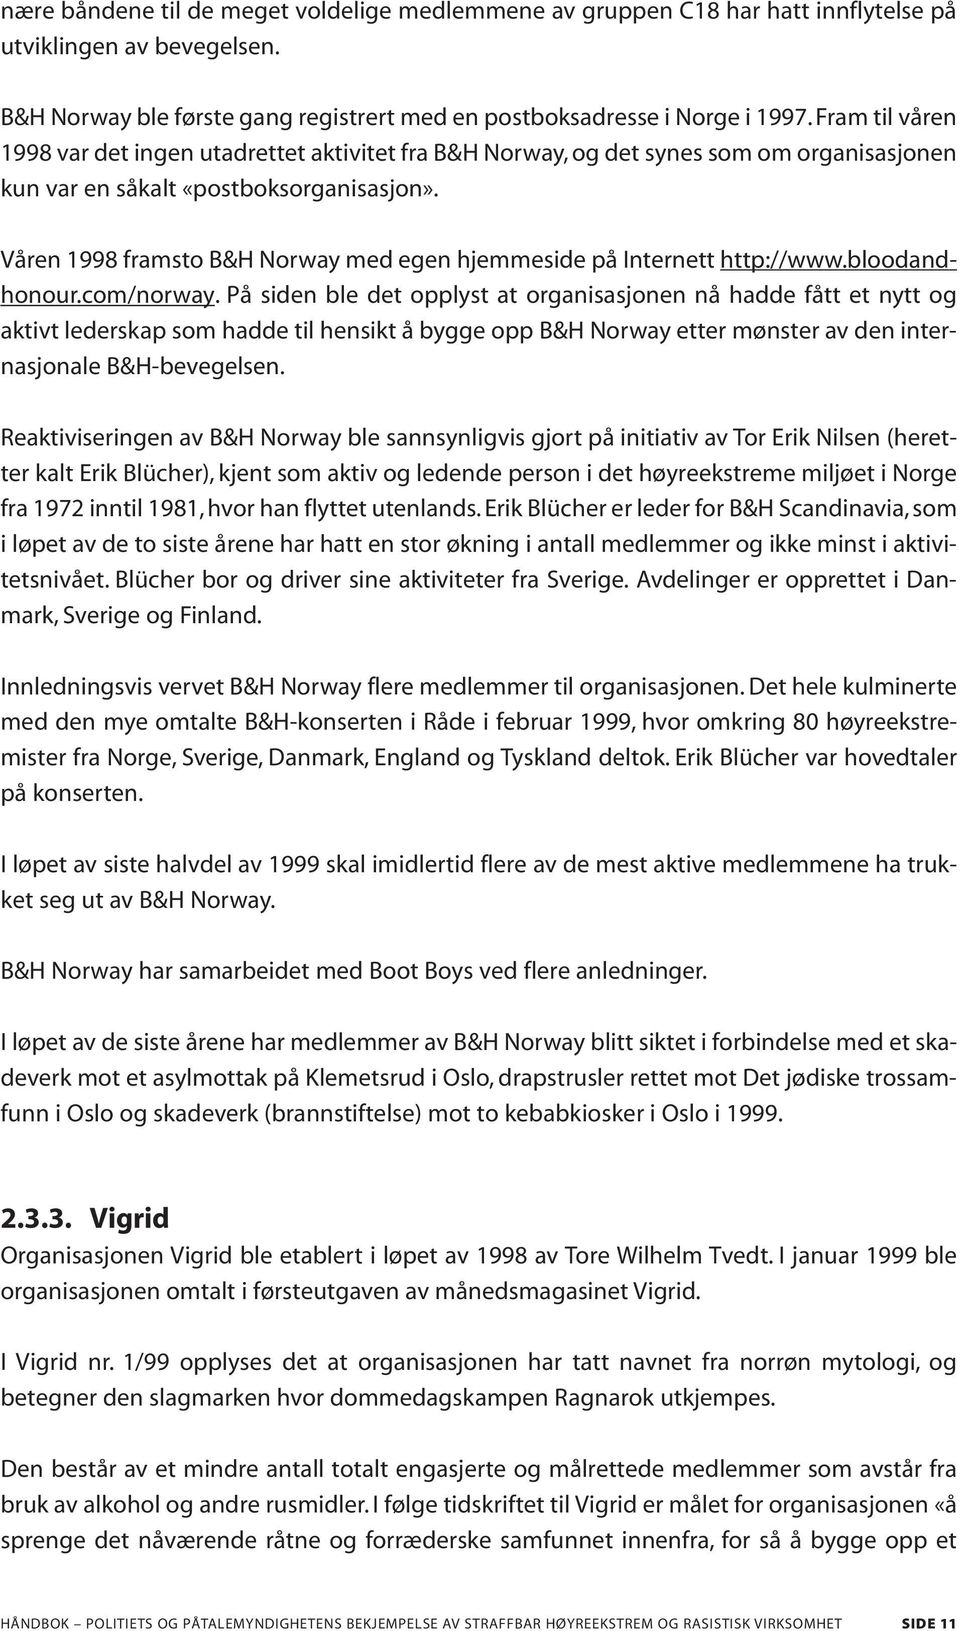 Våren 1998 framsto B&H Norway med egen hjemmeside på Internett http://www.bloodandhonour.com/norway.